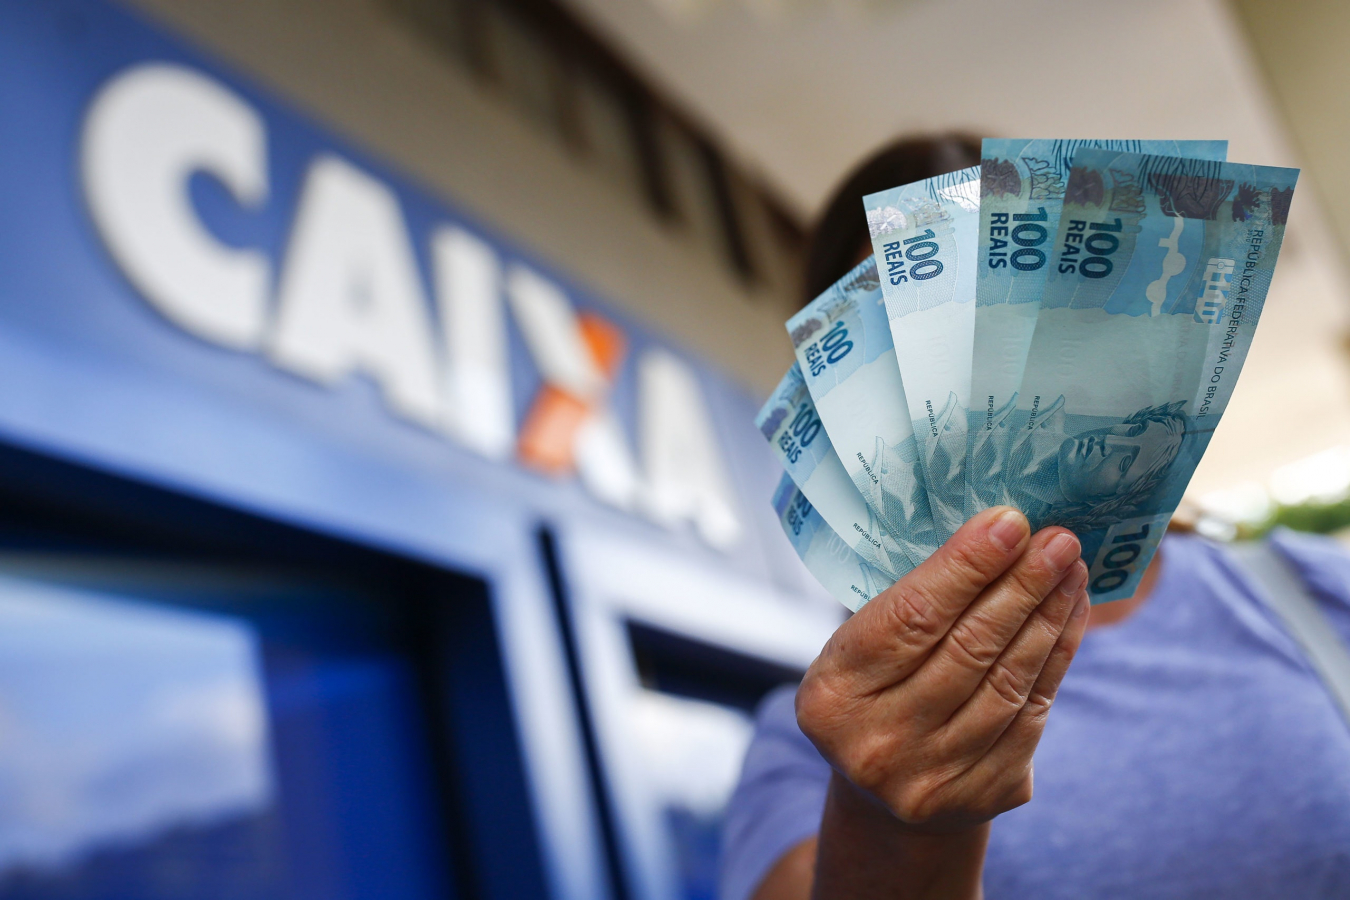 Bancos já podem fazer empréstimo consignado do Auxílio Brasil e BPC